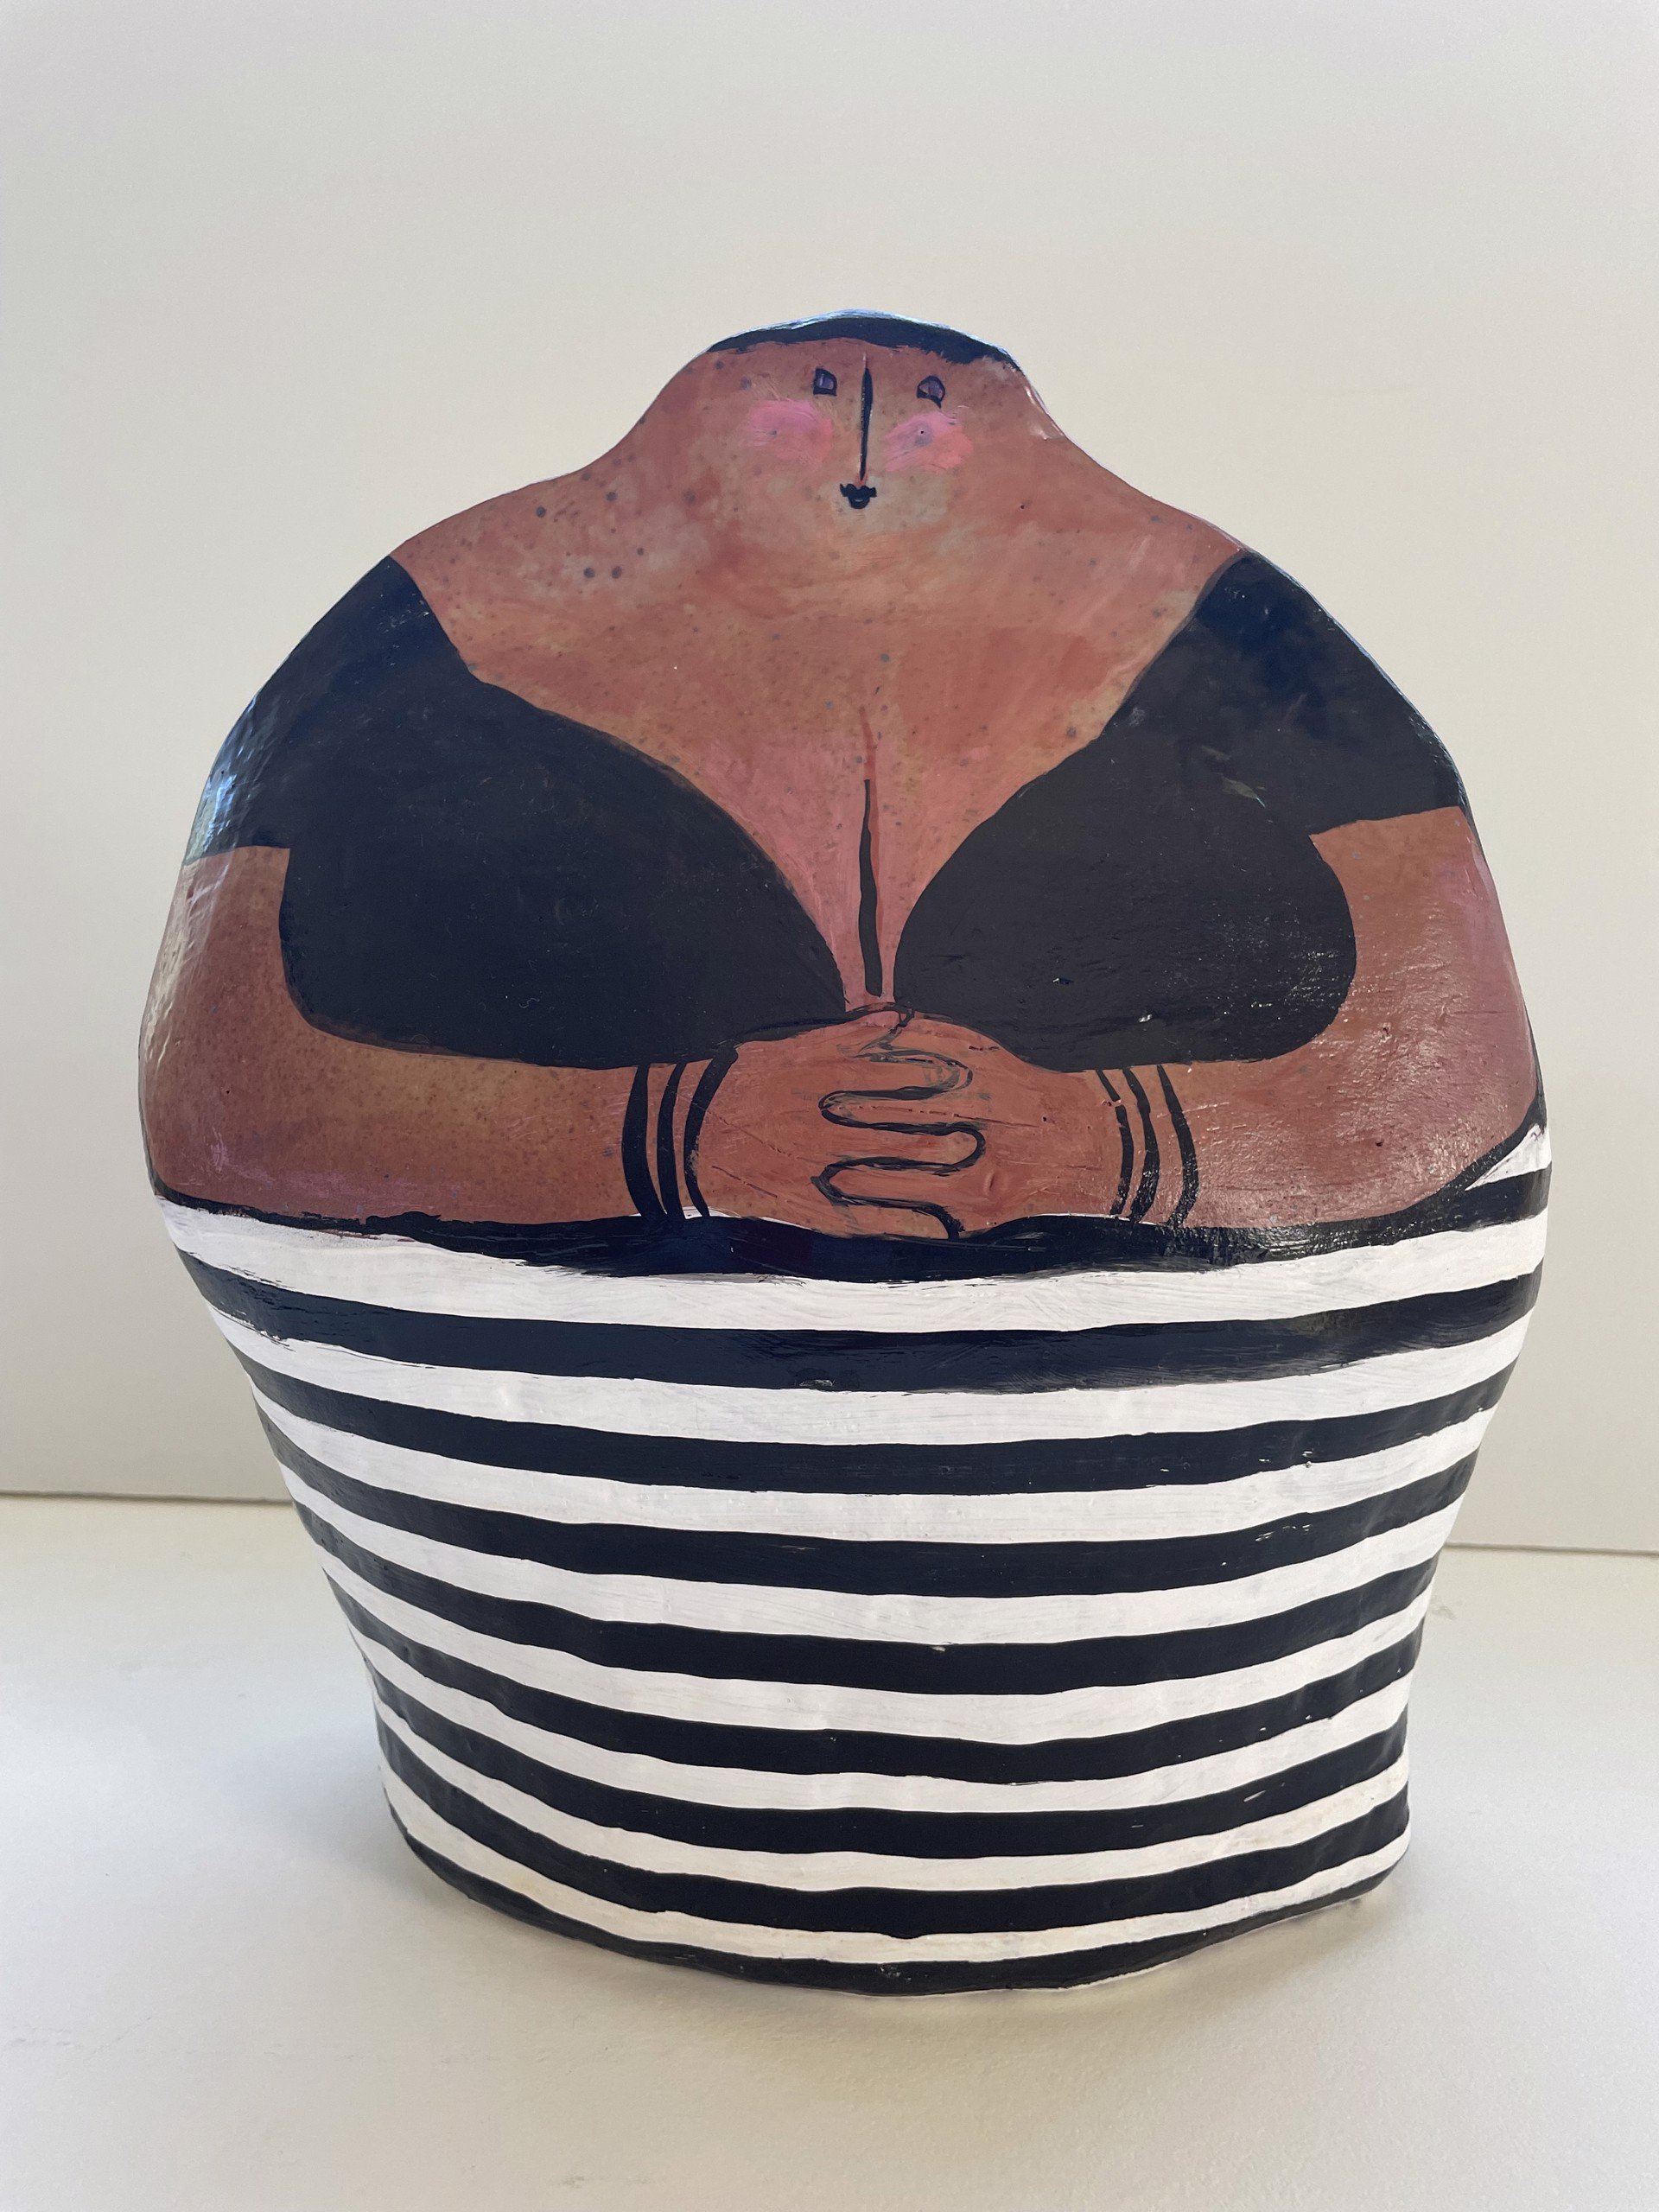 Striped Skirt (by Jane Dahmen & Alison Lauriat, Ceramicist) by Jane Dahmen